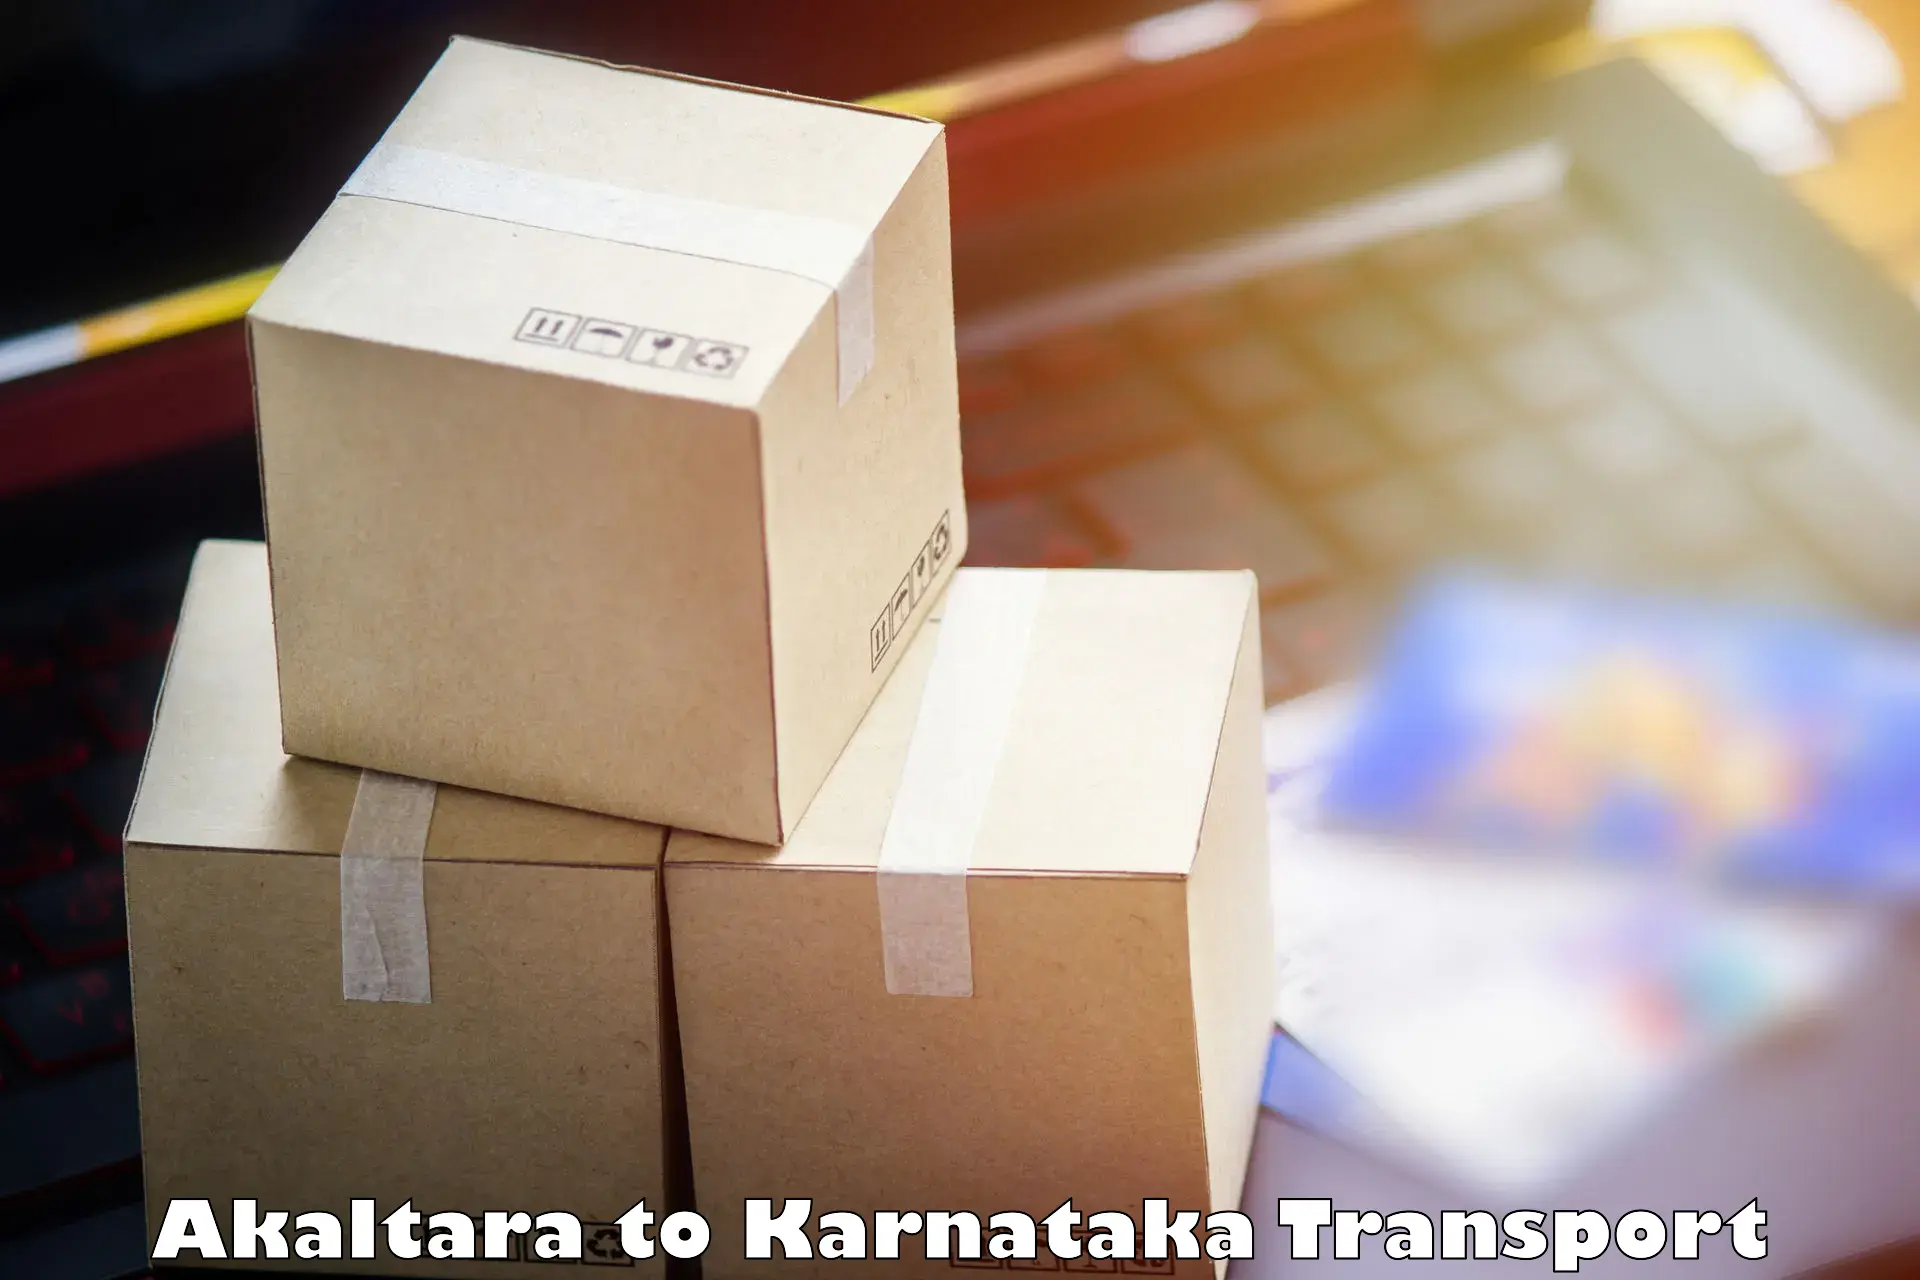 Nearest transport service Akaltara to Bijapur